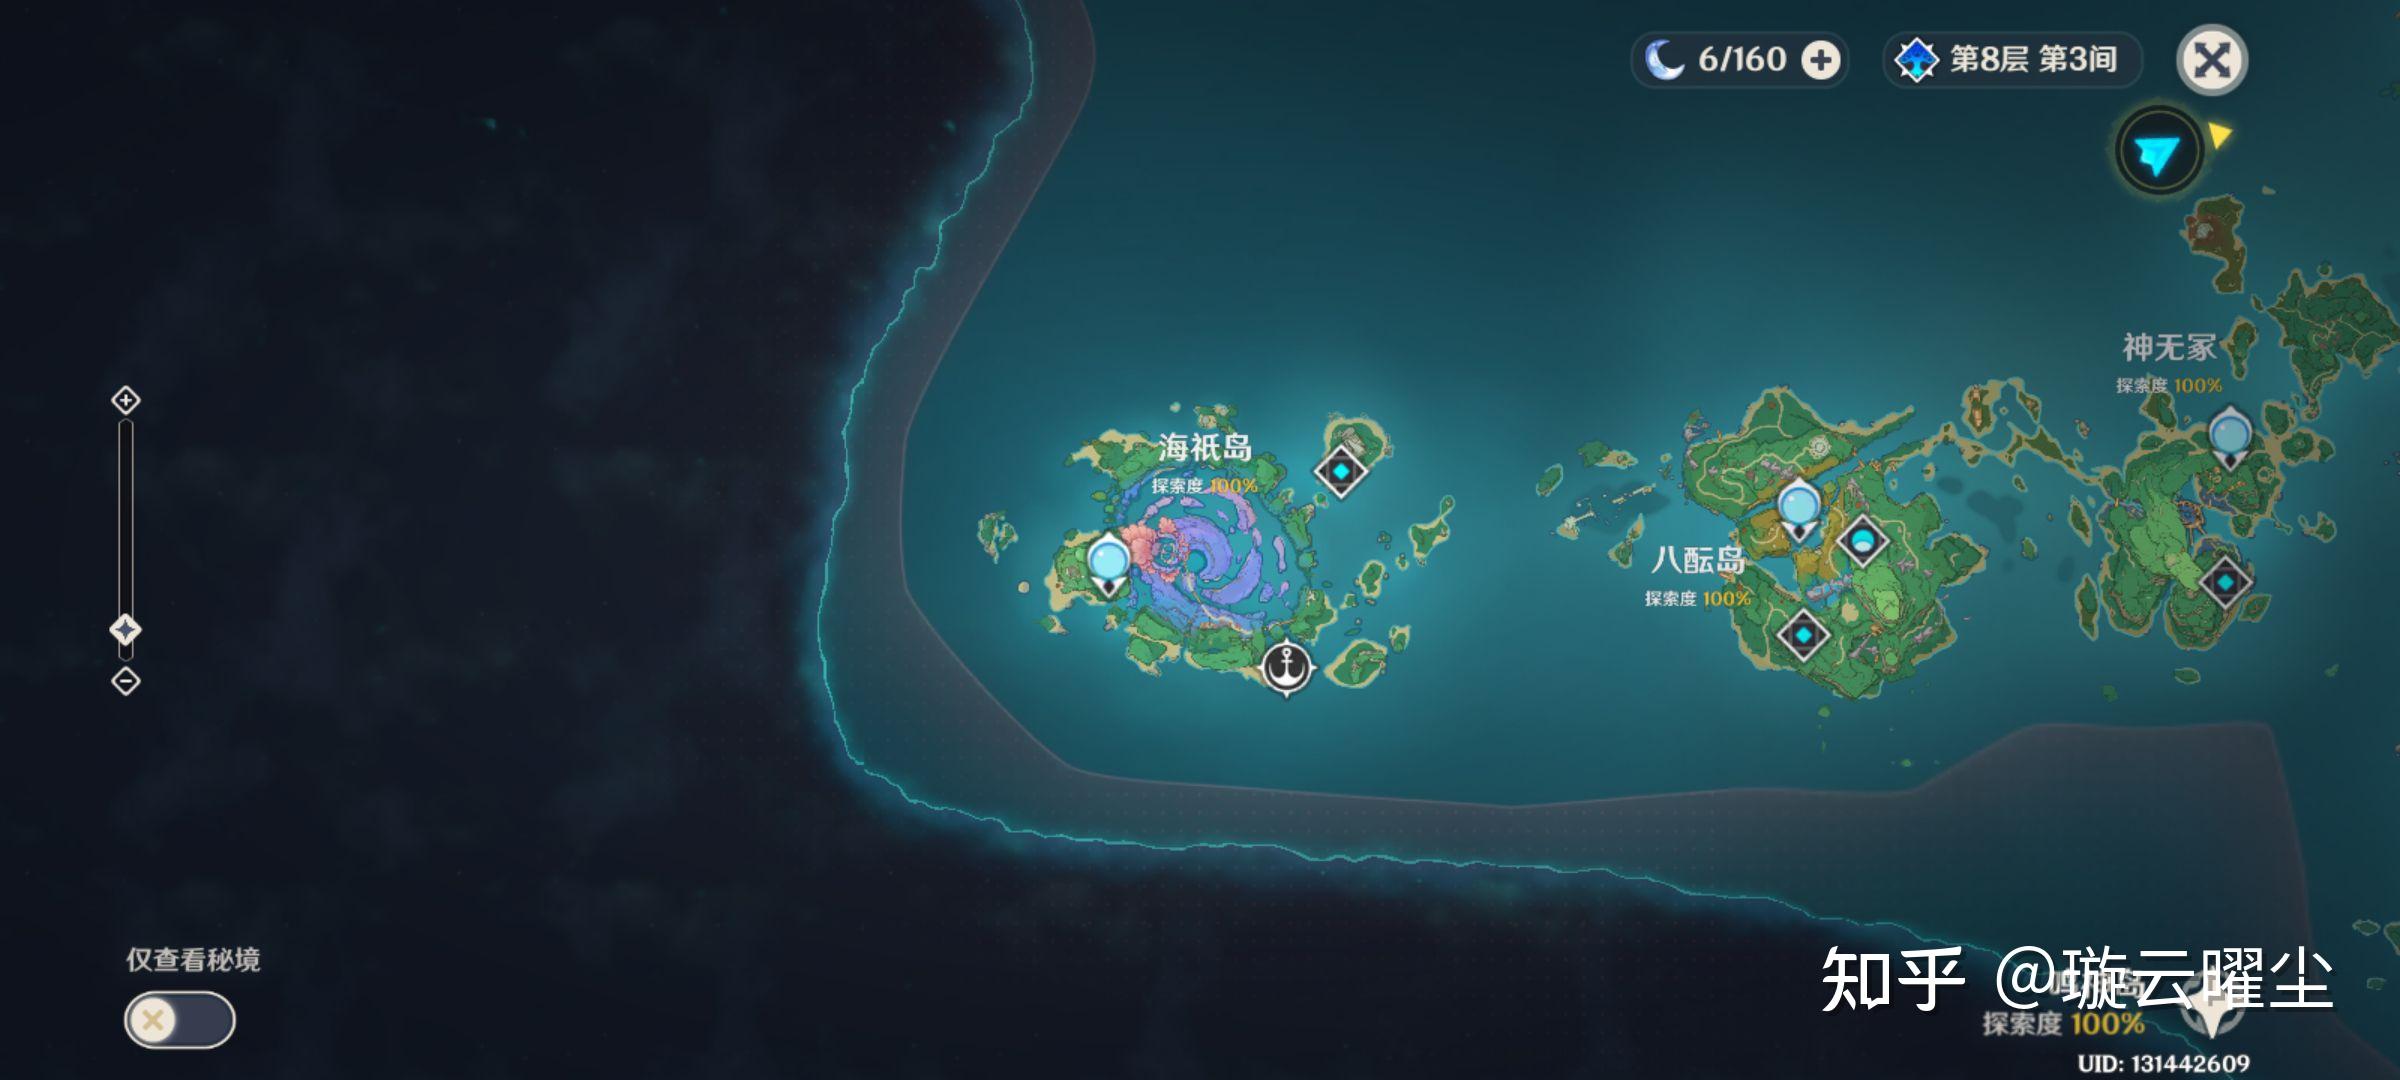 游戏原神21版本更新的稻妻地图清籁岛海只岛设计如何